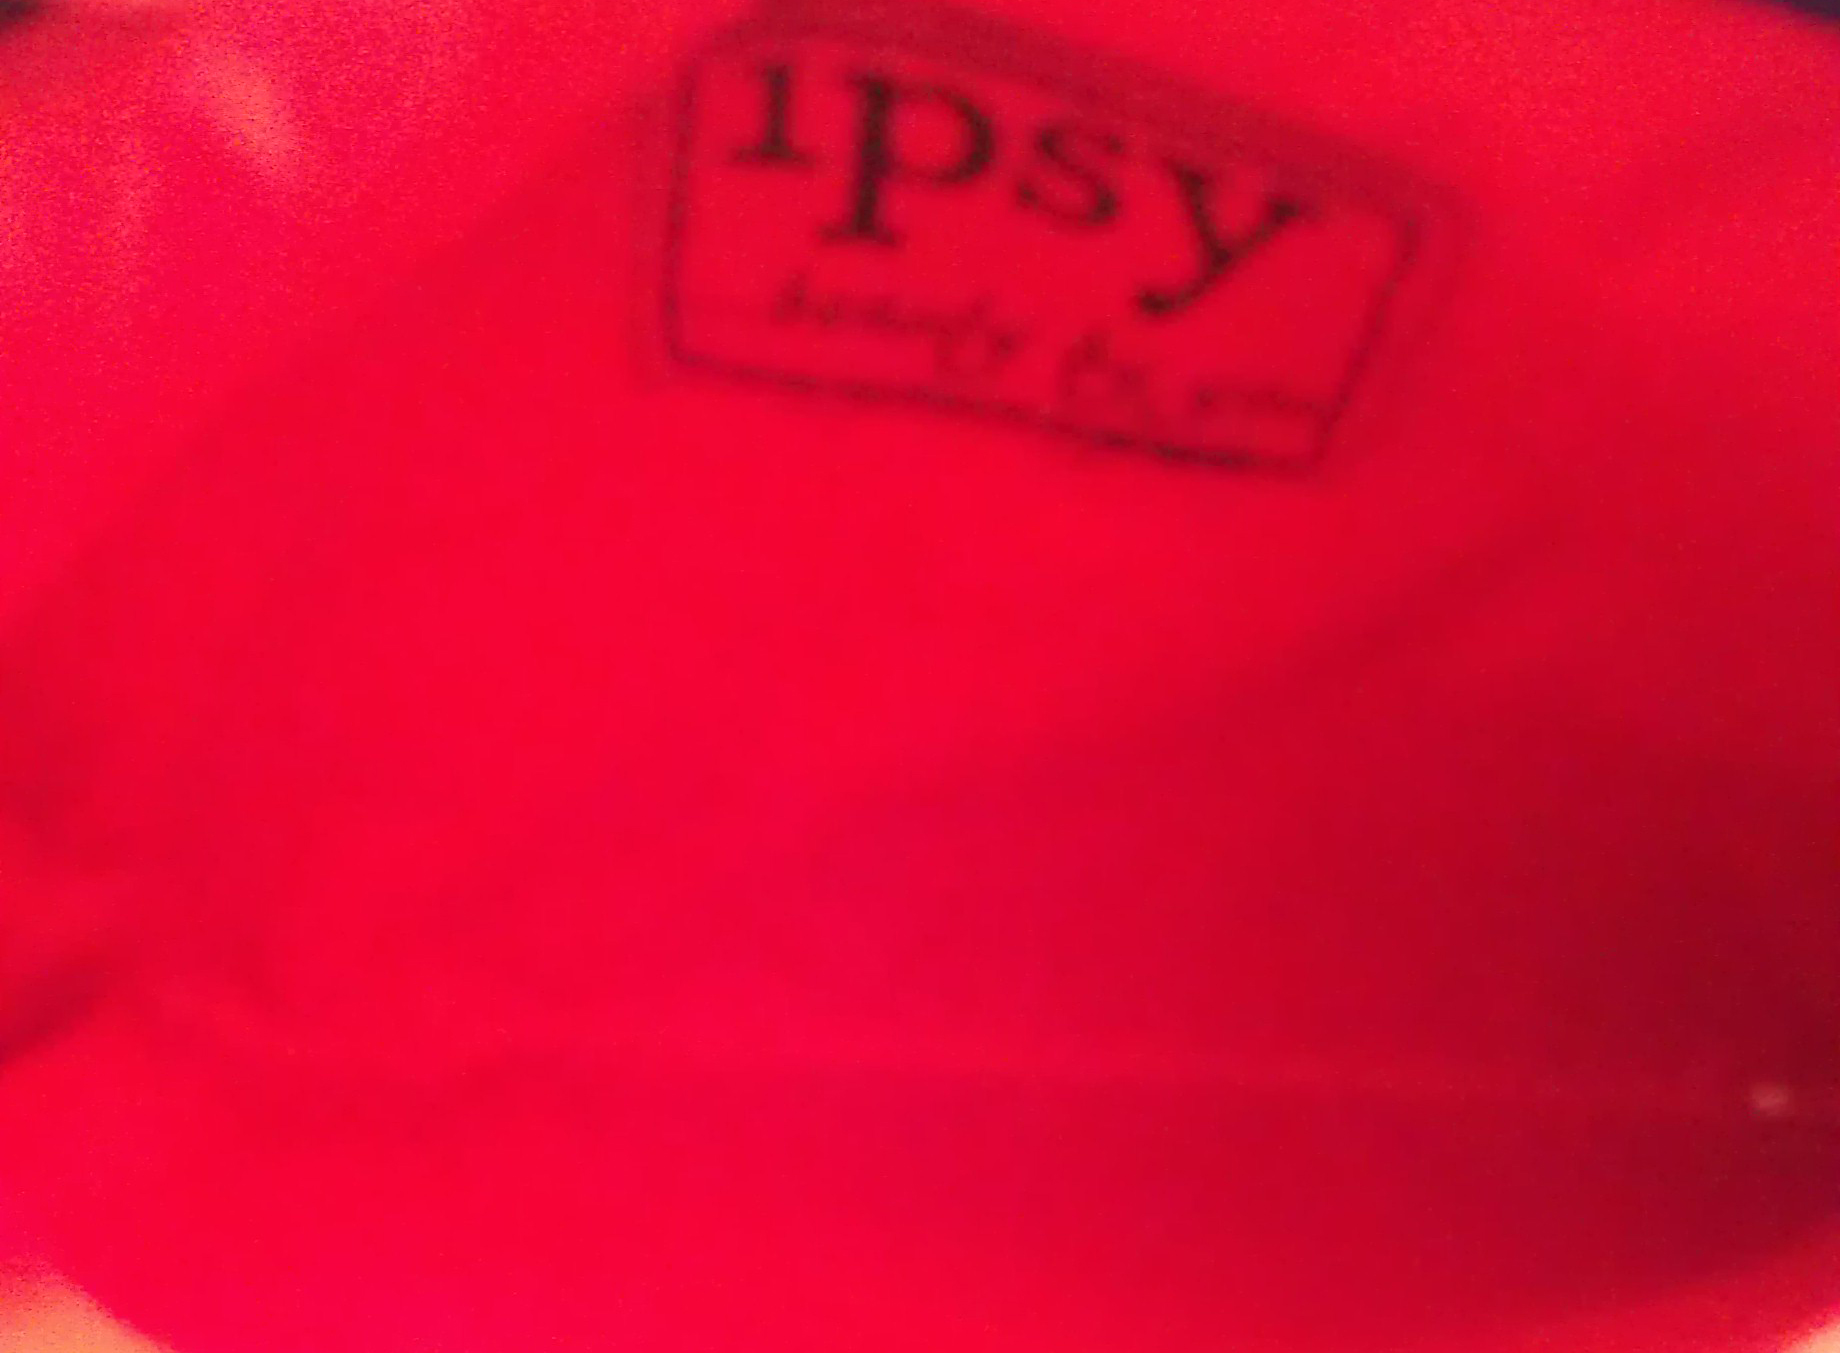 Ipsy February 2013 Bag Inside